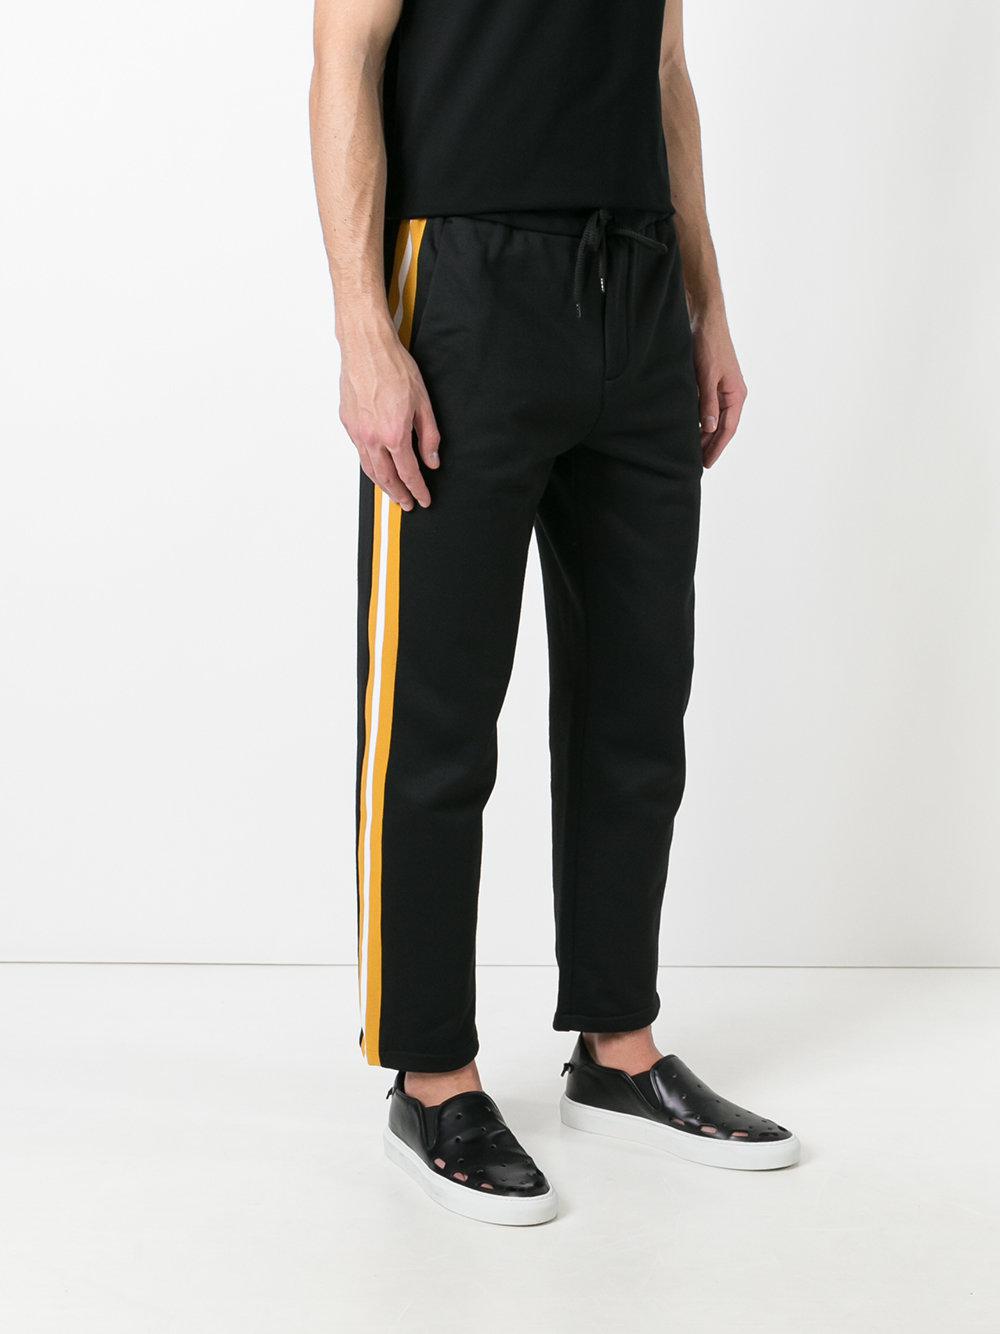 Lyst - Golden Goose Deluxe Brand Fleece Track Pants in Black for Men